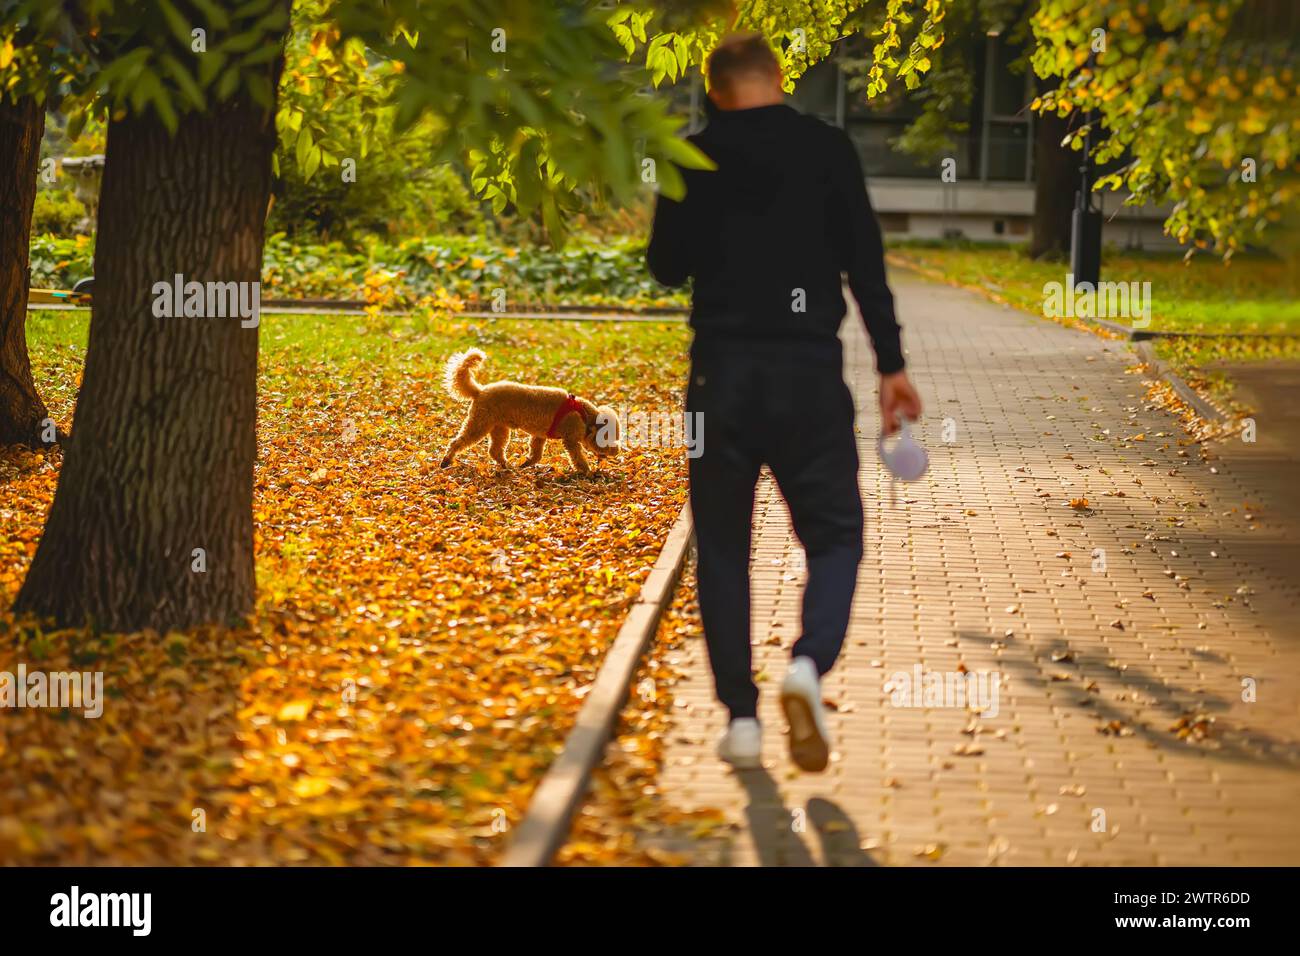 Mann, Rückansicht, geht mit seinem Hund auf einem Bürgersteig. Der Hund schnüffelt am Boden. Herbst, Laubfall-Konzept Stockfoto